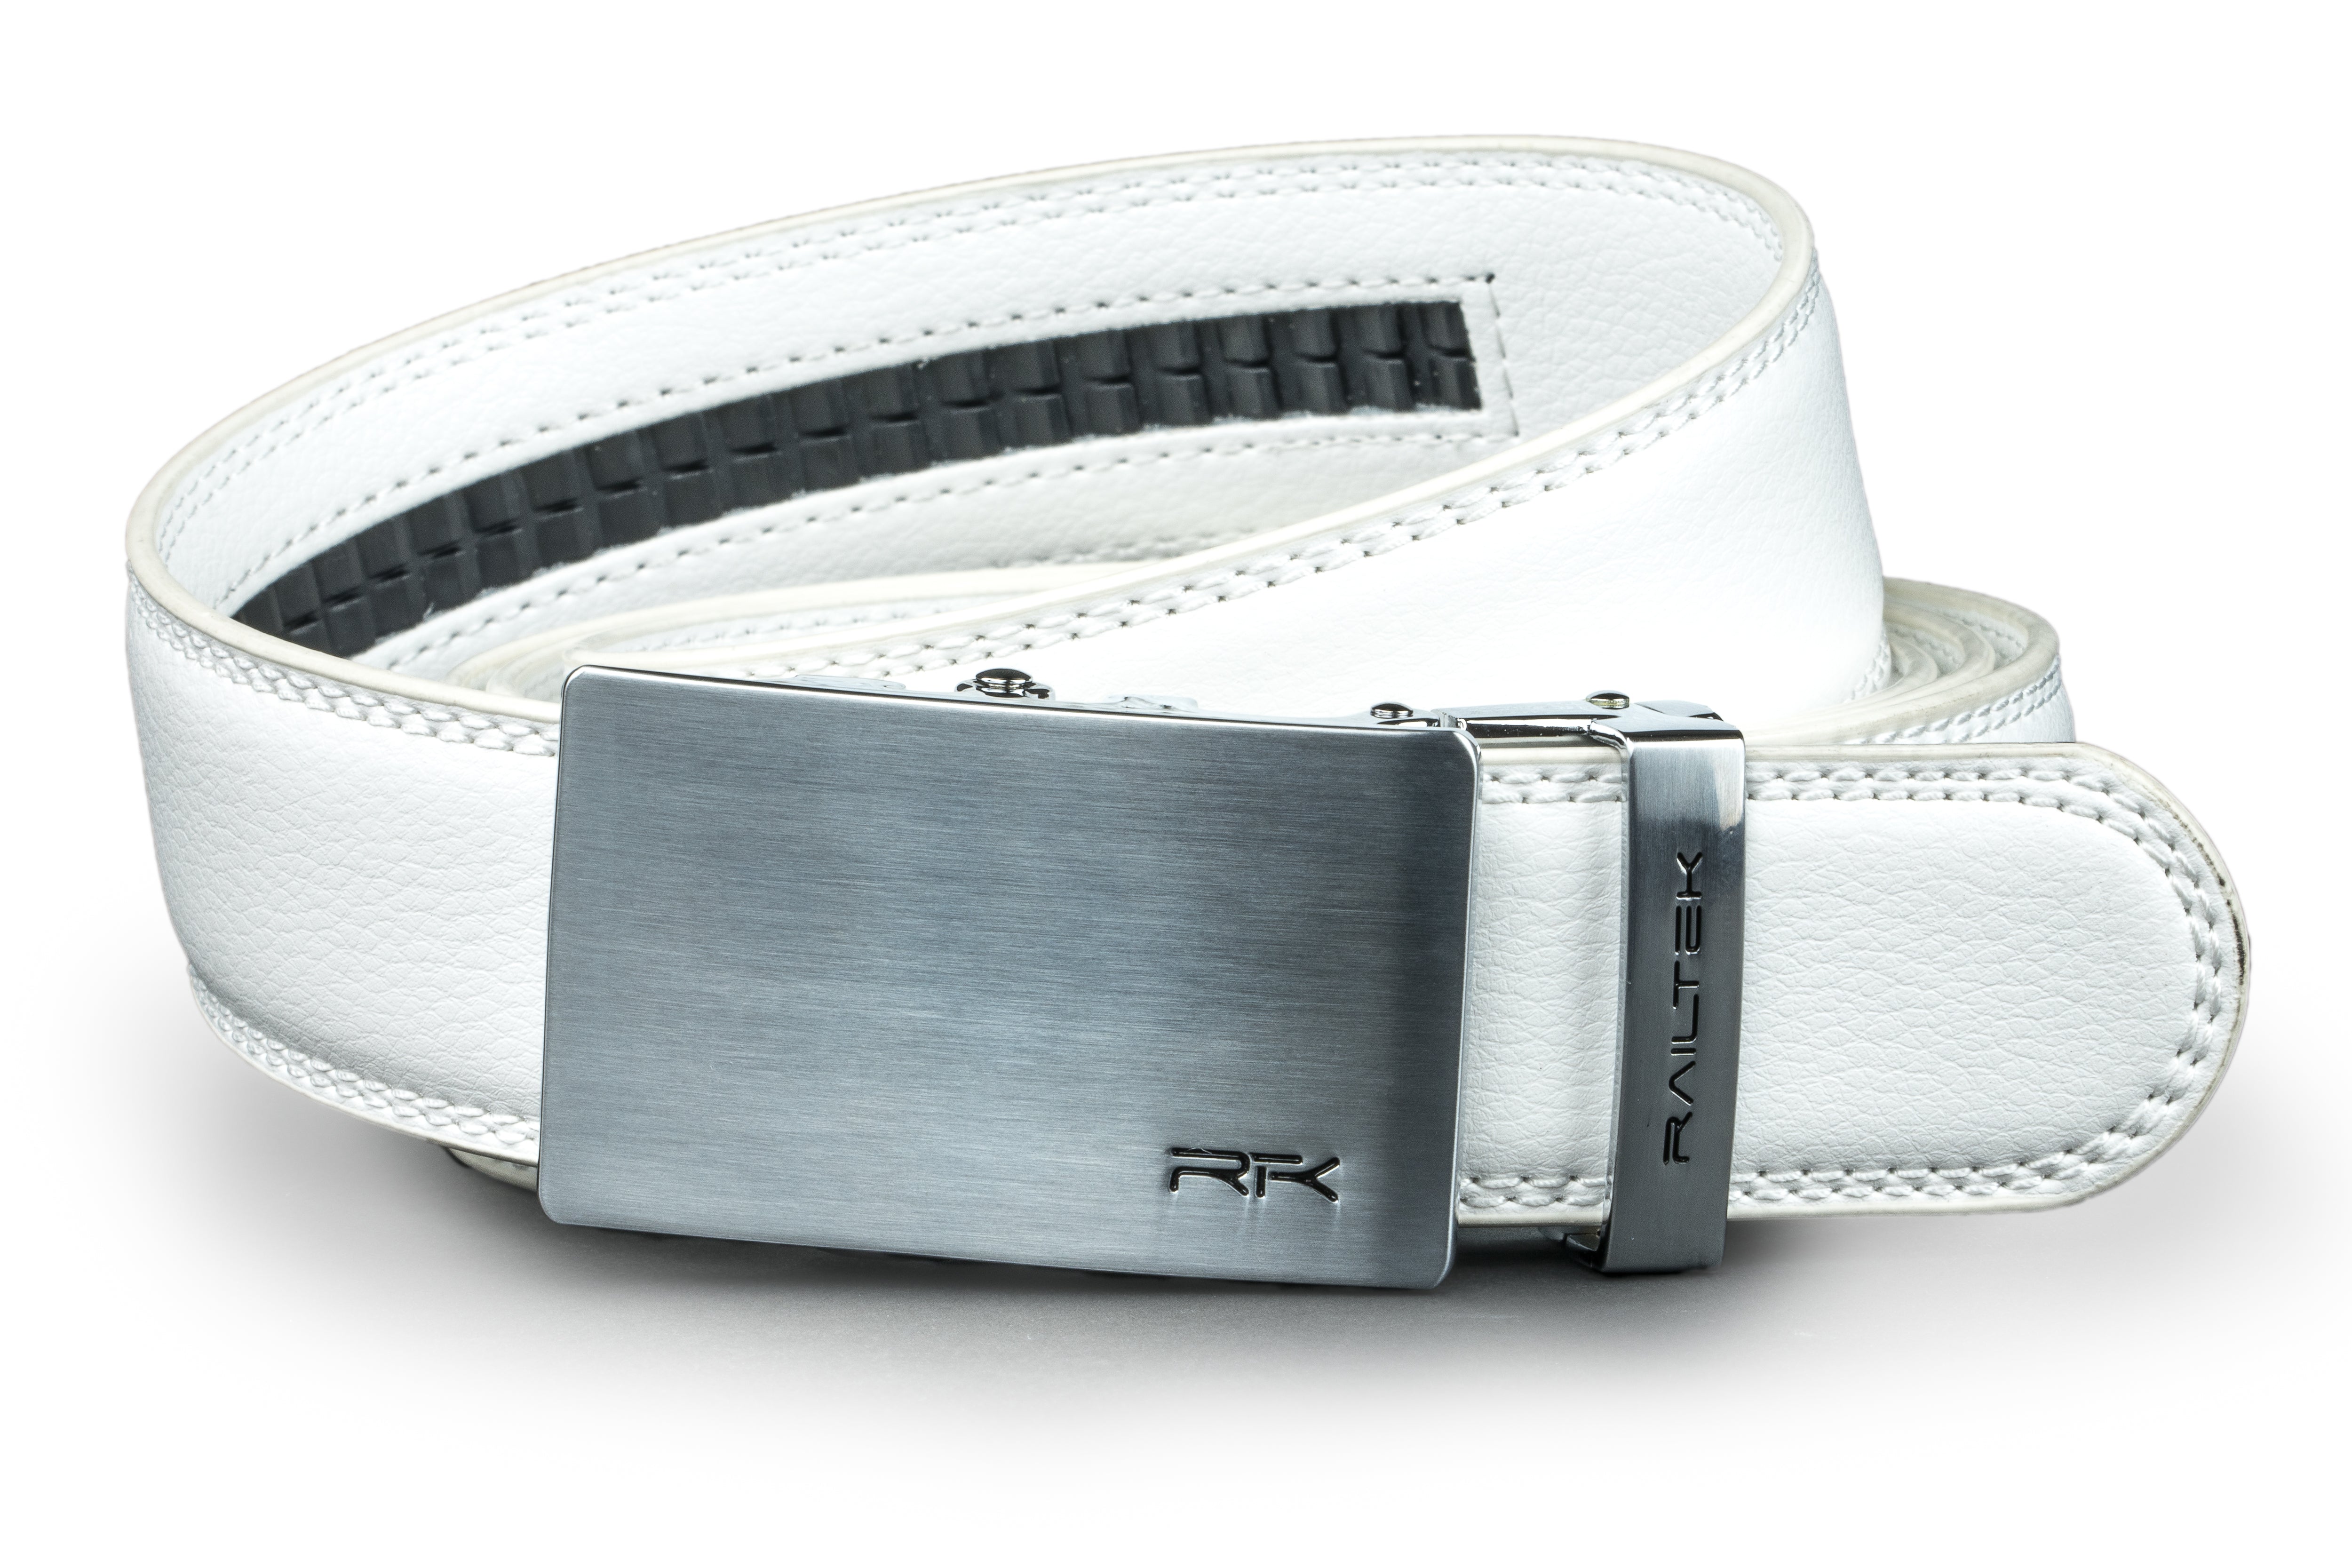 BELTROAD Nylon Ratchet Belts for Men, Men's Golf Belts for Casual